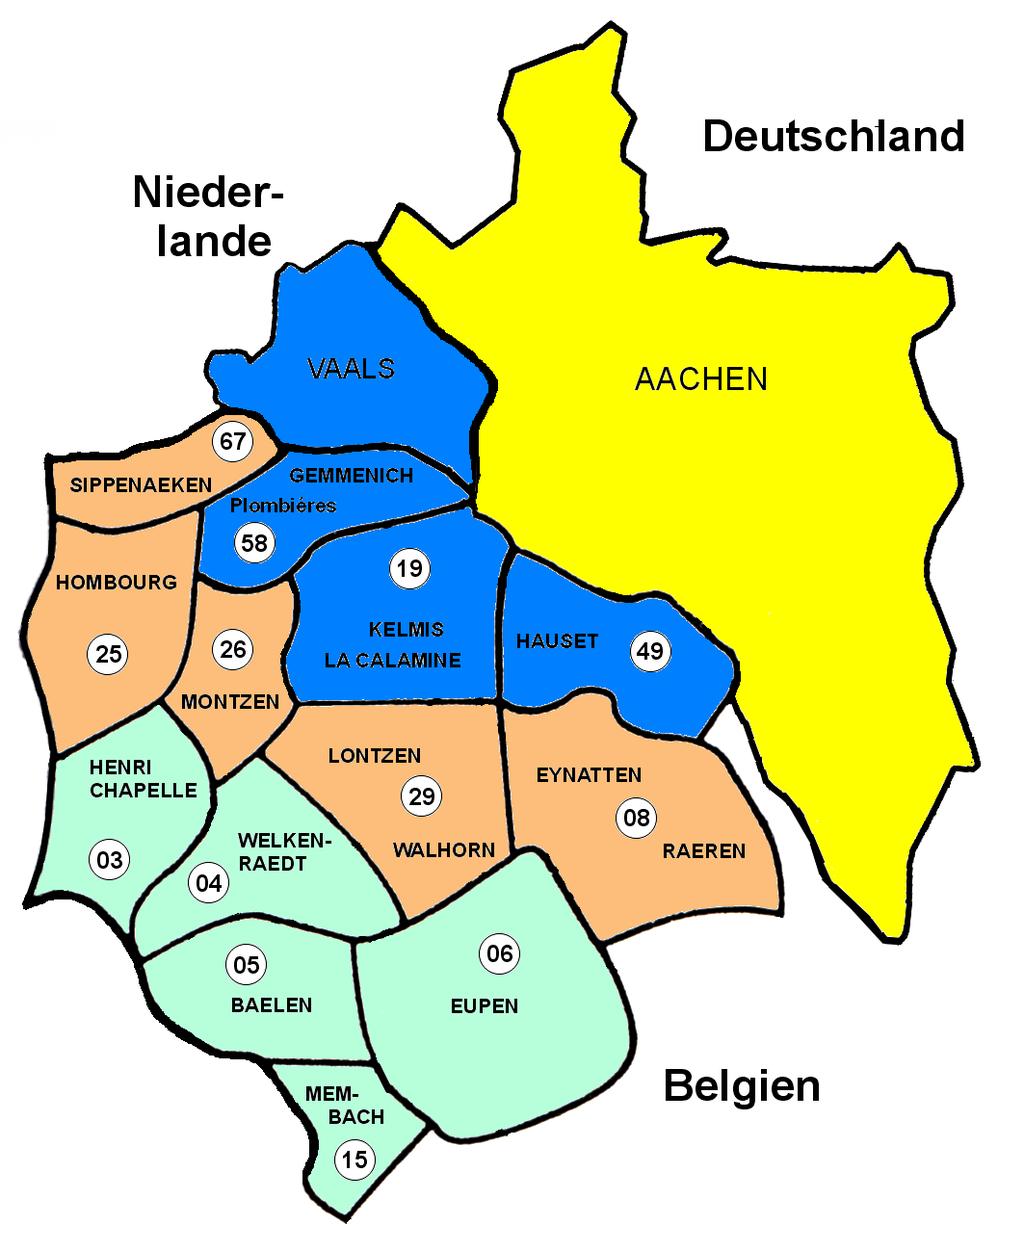 2011 Zone 1 Zone 3 Zone 2 Zone 0 Zone 1 Zone 2 Zone 3 Aachen 58 Gemmenich 19